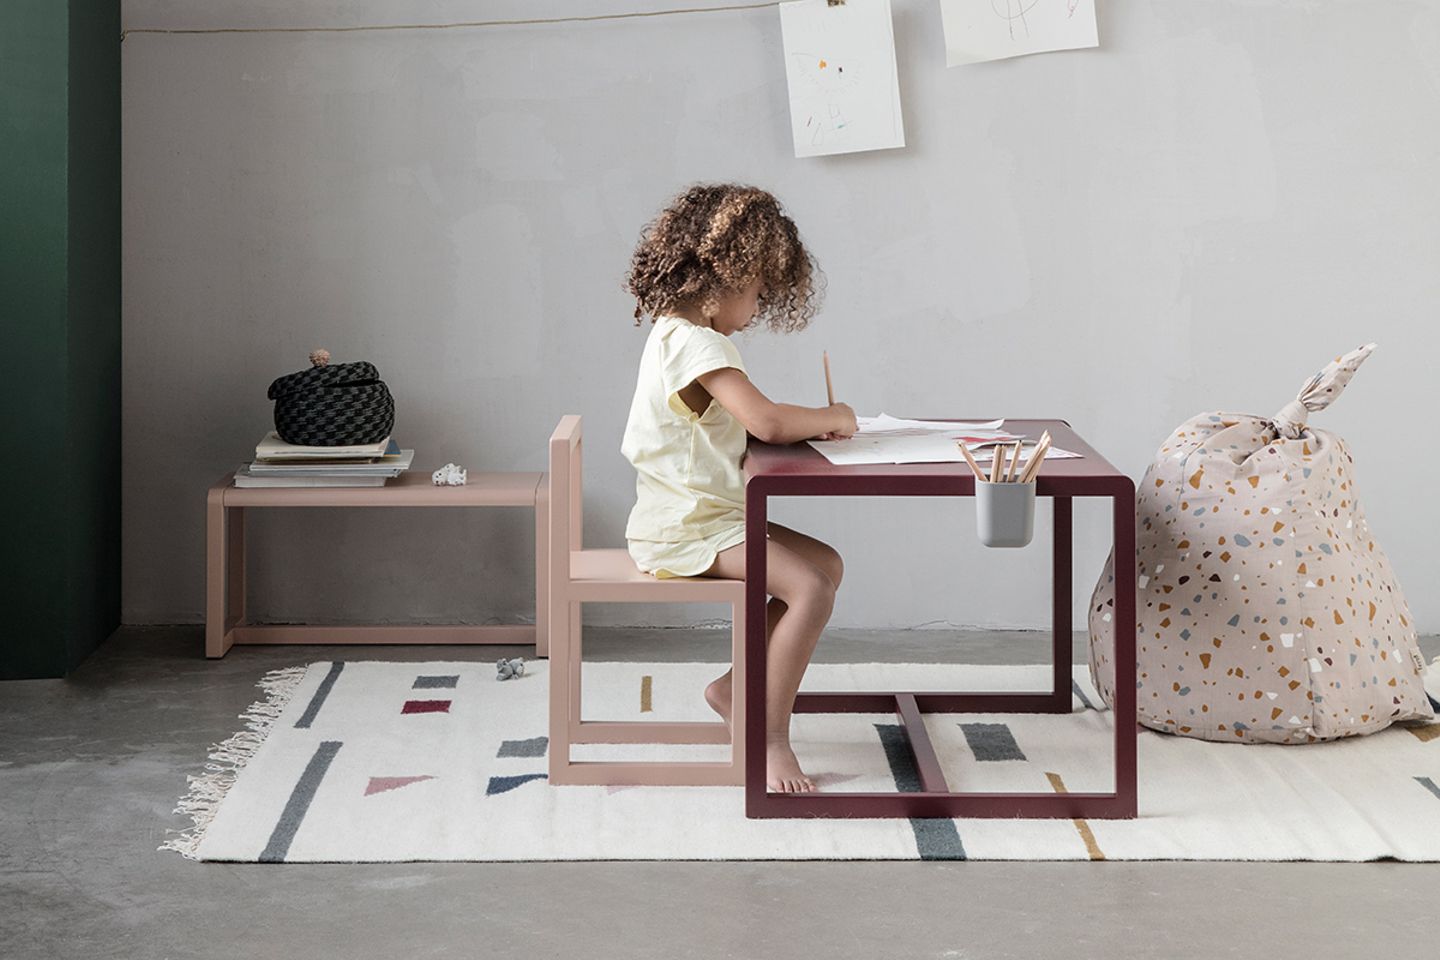 Braunhaariges, gelocktes Mädchen malt an einem Kindertisch